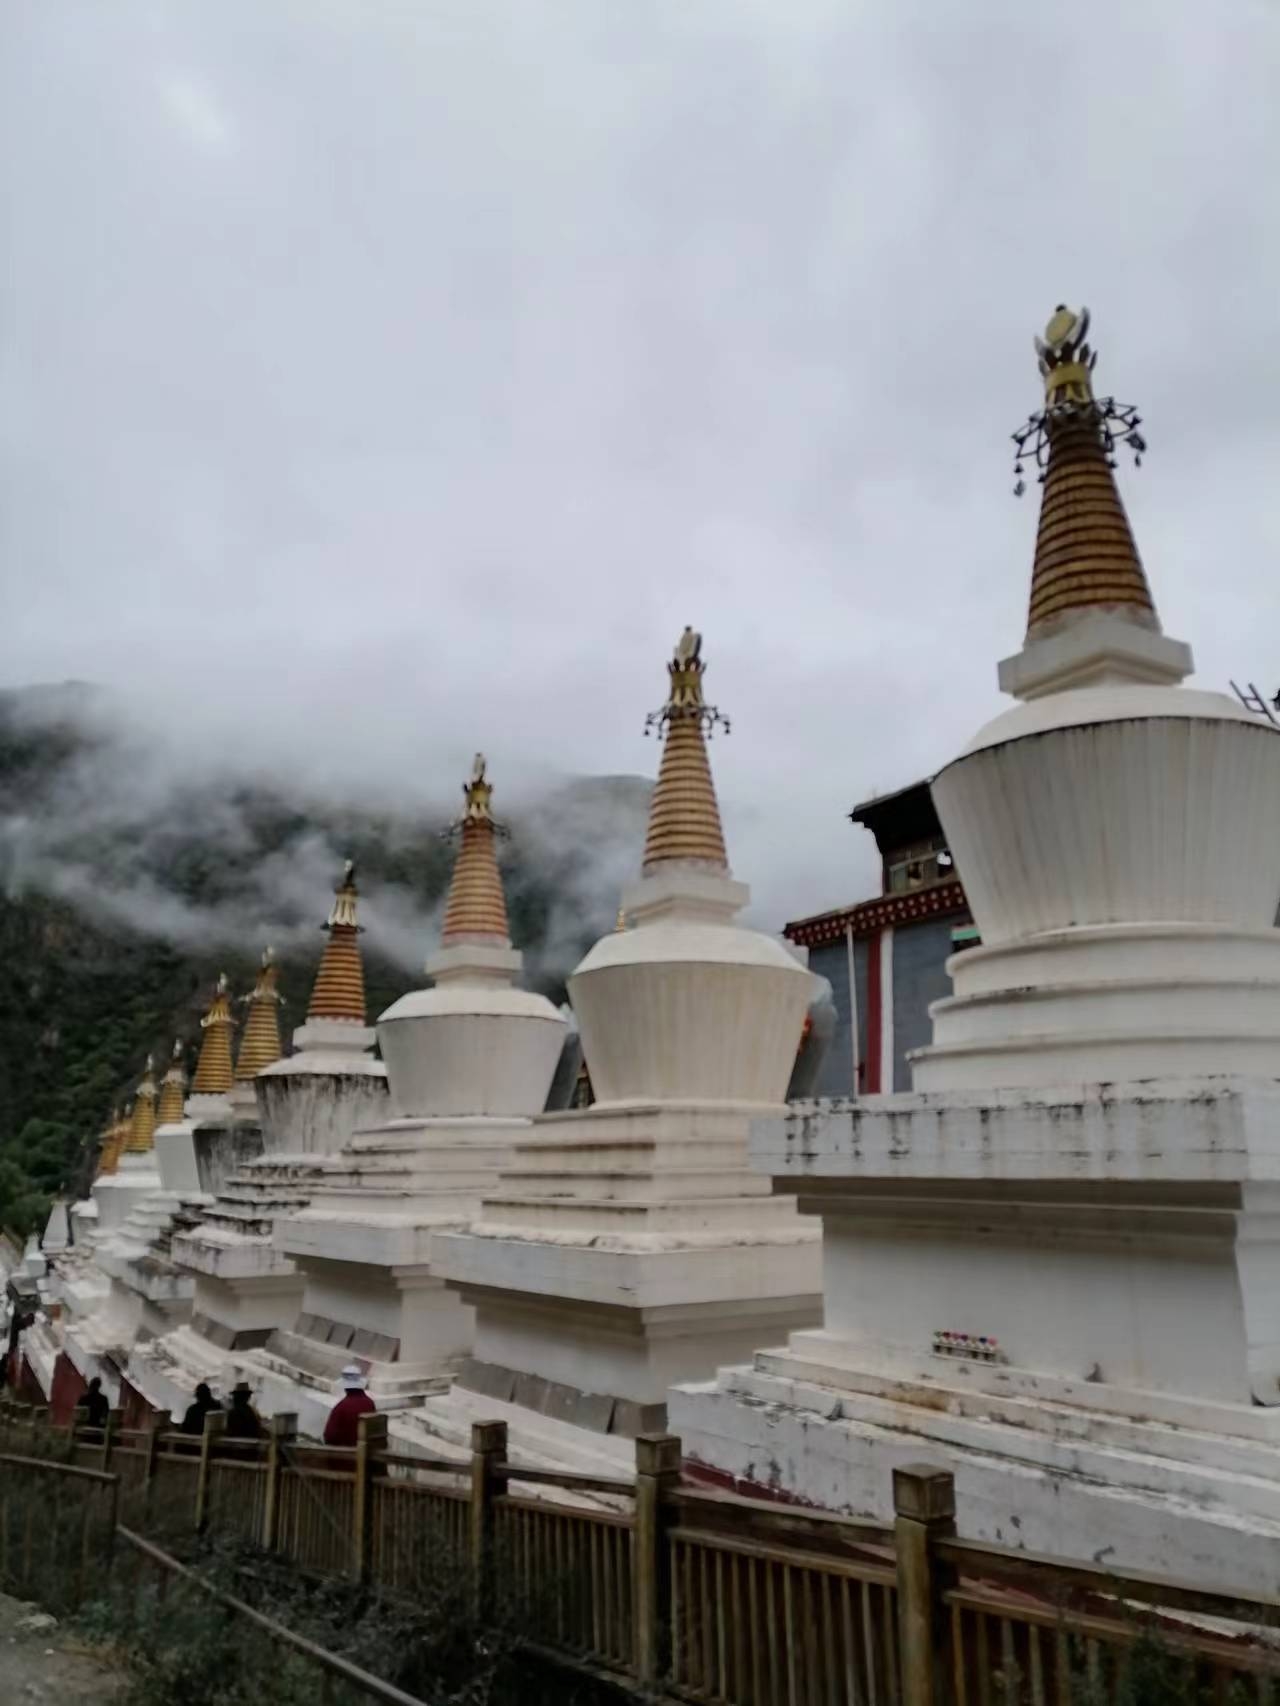 #发现宝藏旅行地 #发现旅途的色彩 更庆寺位于四川甘孜州德格县城内，与著名的印经院相邻，它是藏传佛教